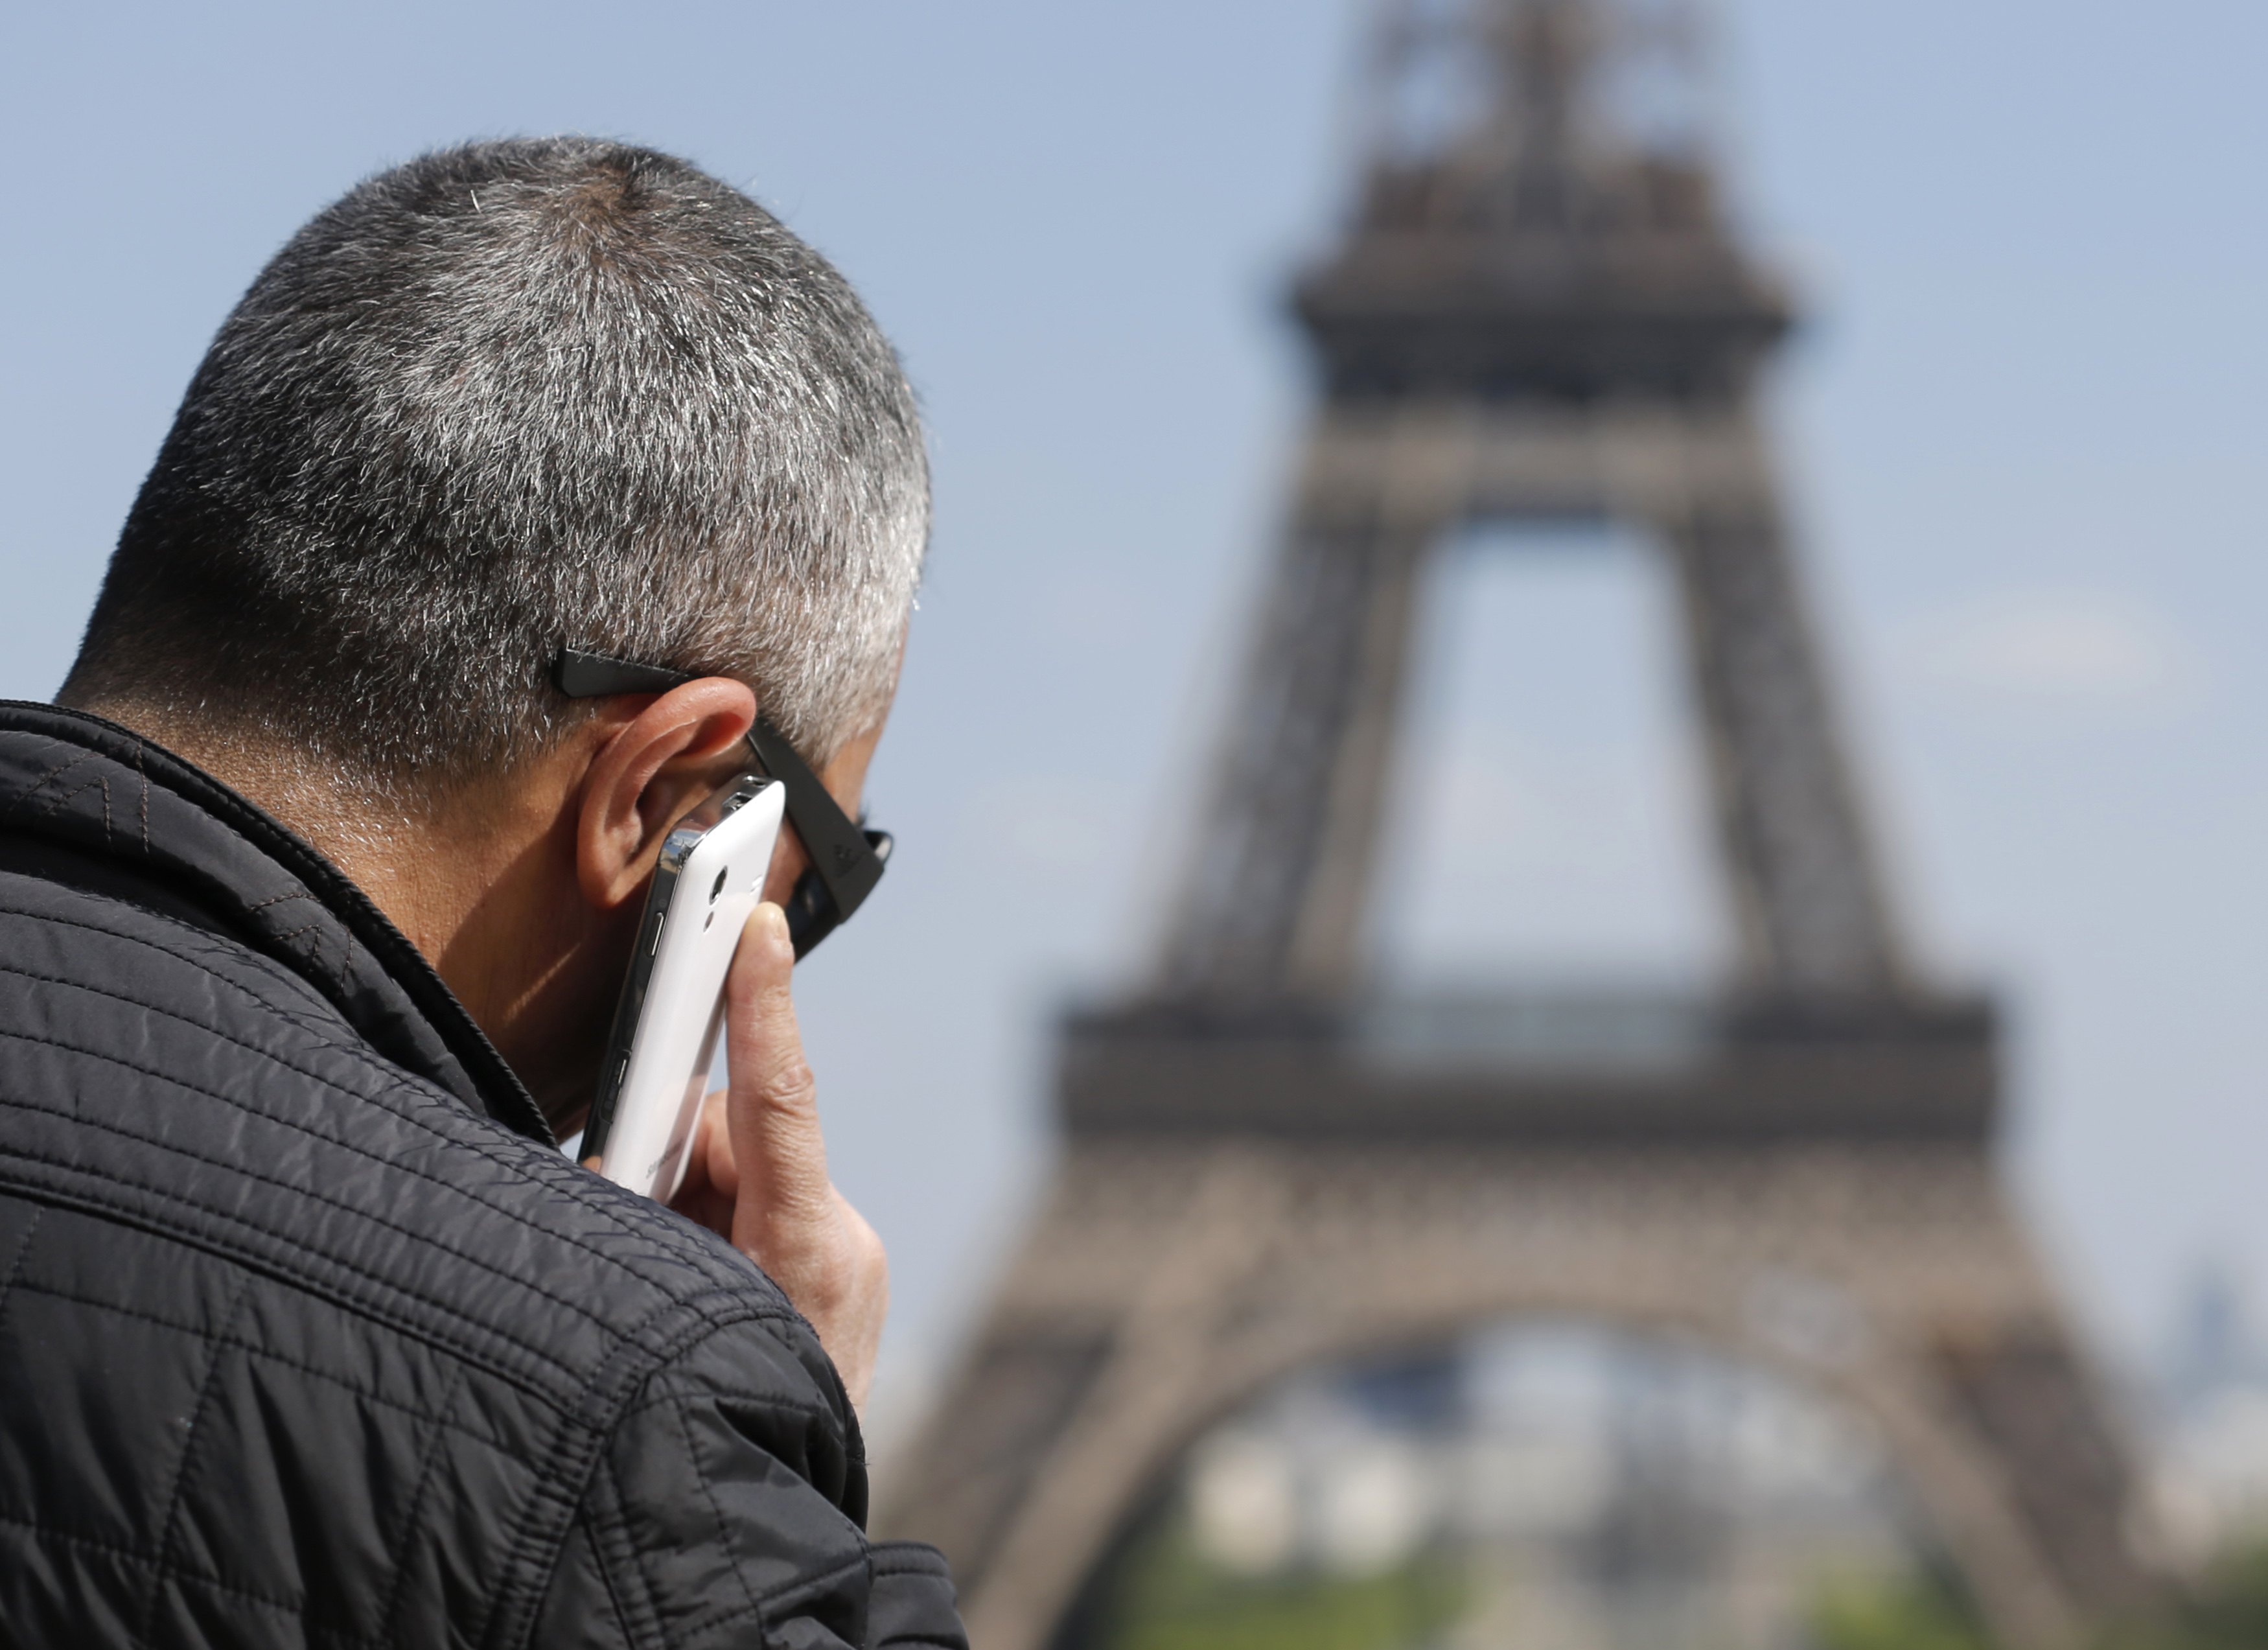 Δερματικές αλλεργίες μπορεί να προκαλούν τα κινητά τηλέφωνα